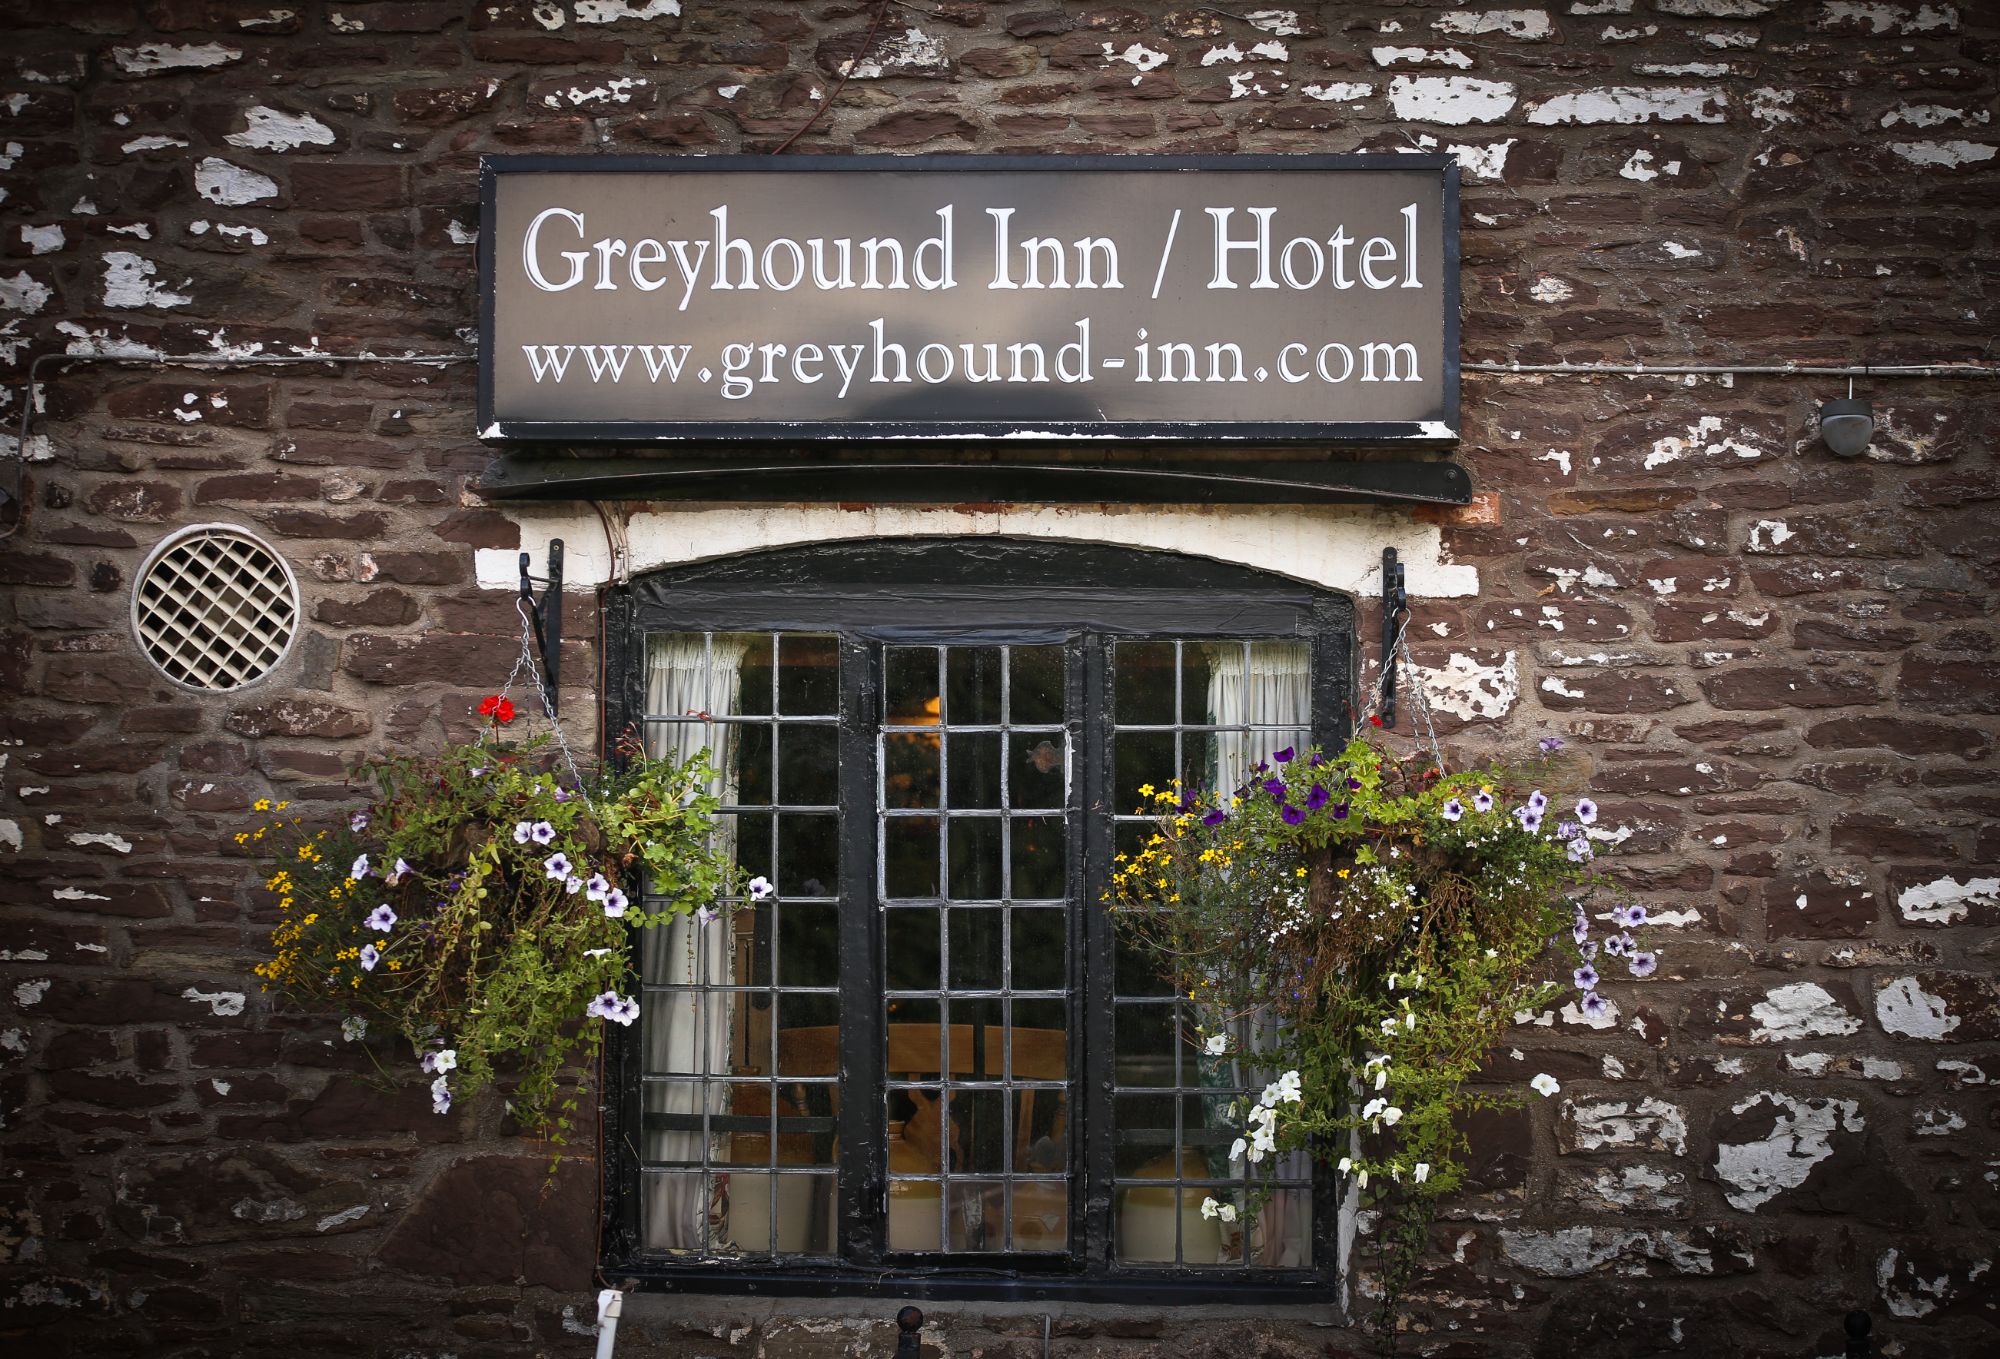 The Greyhound Inn sign